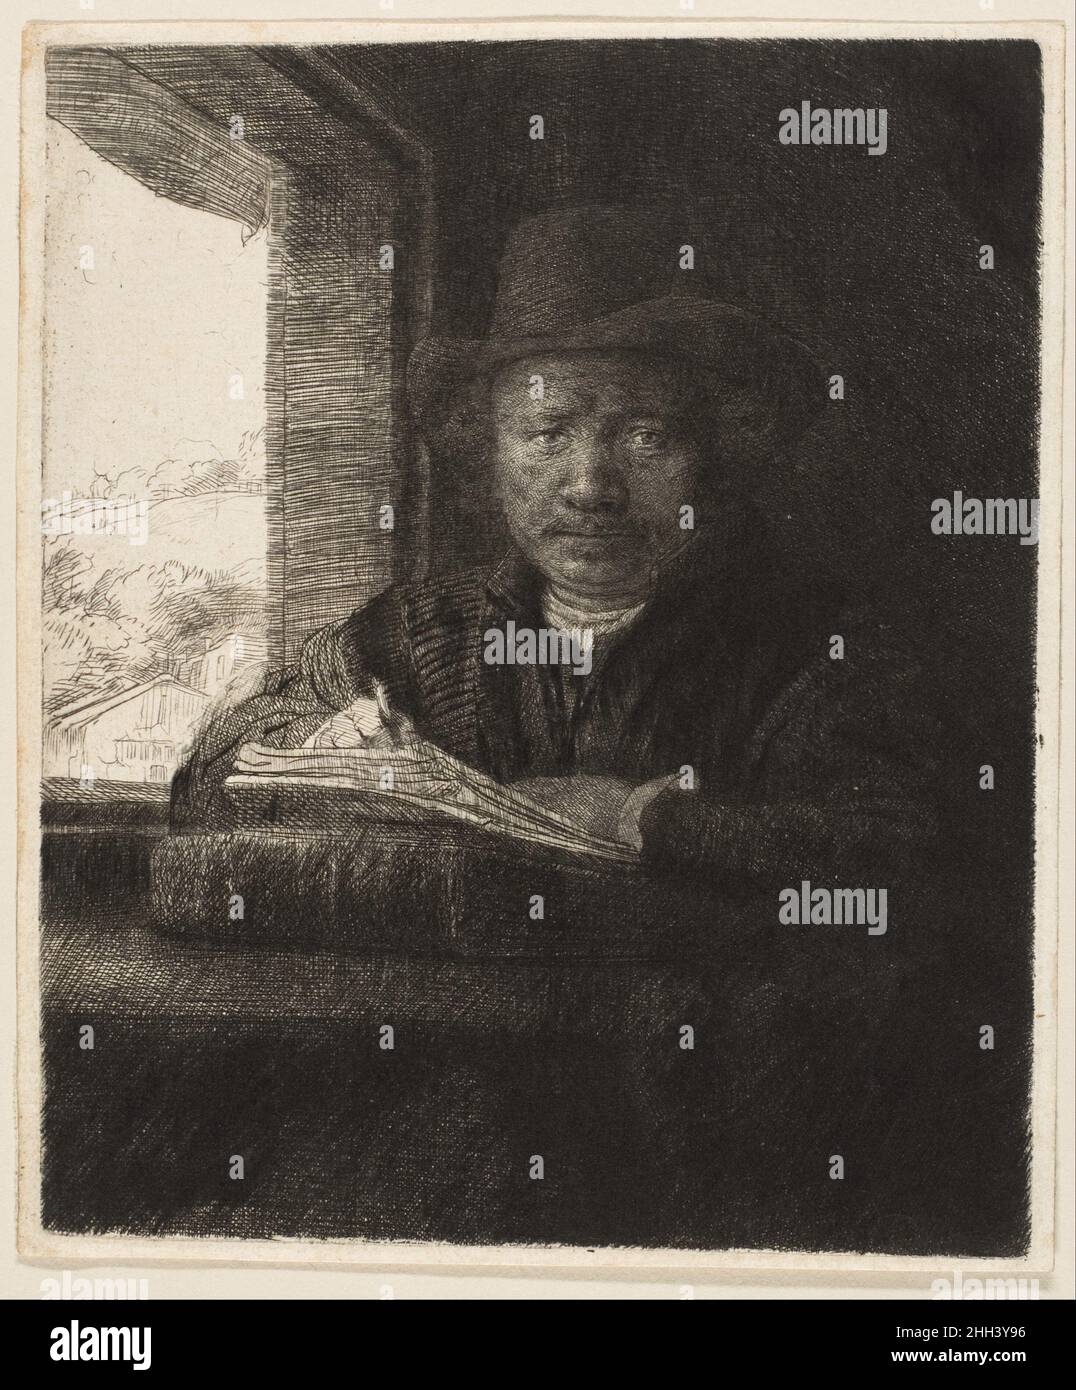 Selbstporträt Radieren an einem Fenster 1648 Rembrandt (Rembrandt van Rijn) Holländer Rembrandt van RijnNiederländisch, 1606–1669Self-Porträtzeichnung an einem Fenster, 1648Etching, Trockenpunkt, Und burinThe Sylmaris Collection, Gift of George Coe Graves, 1920 (20.46.12)in diesem ikonischen Bild präsentierte sich Rembrandt im Alter von zweiundvierzig Jahren nicht als Ideal, sondern auf eine ganz andere Art und Weise als Künstler bei der Arbeit, unterbrochen mit einer Radiernadel oder einem Stift in der Hand. Die fesselnde Ehrlichkeit seines direkten Blicks zieht den Betrachter in den ruhigen und düstere Raum. Selbstporträt Radieren an einem Fenster 369807 Stockfoto